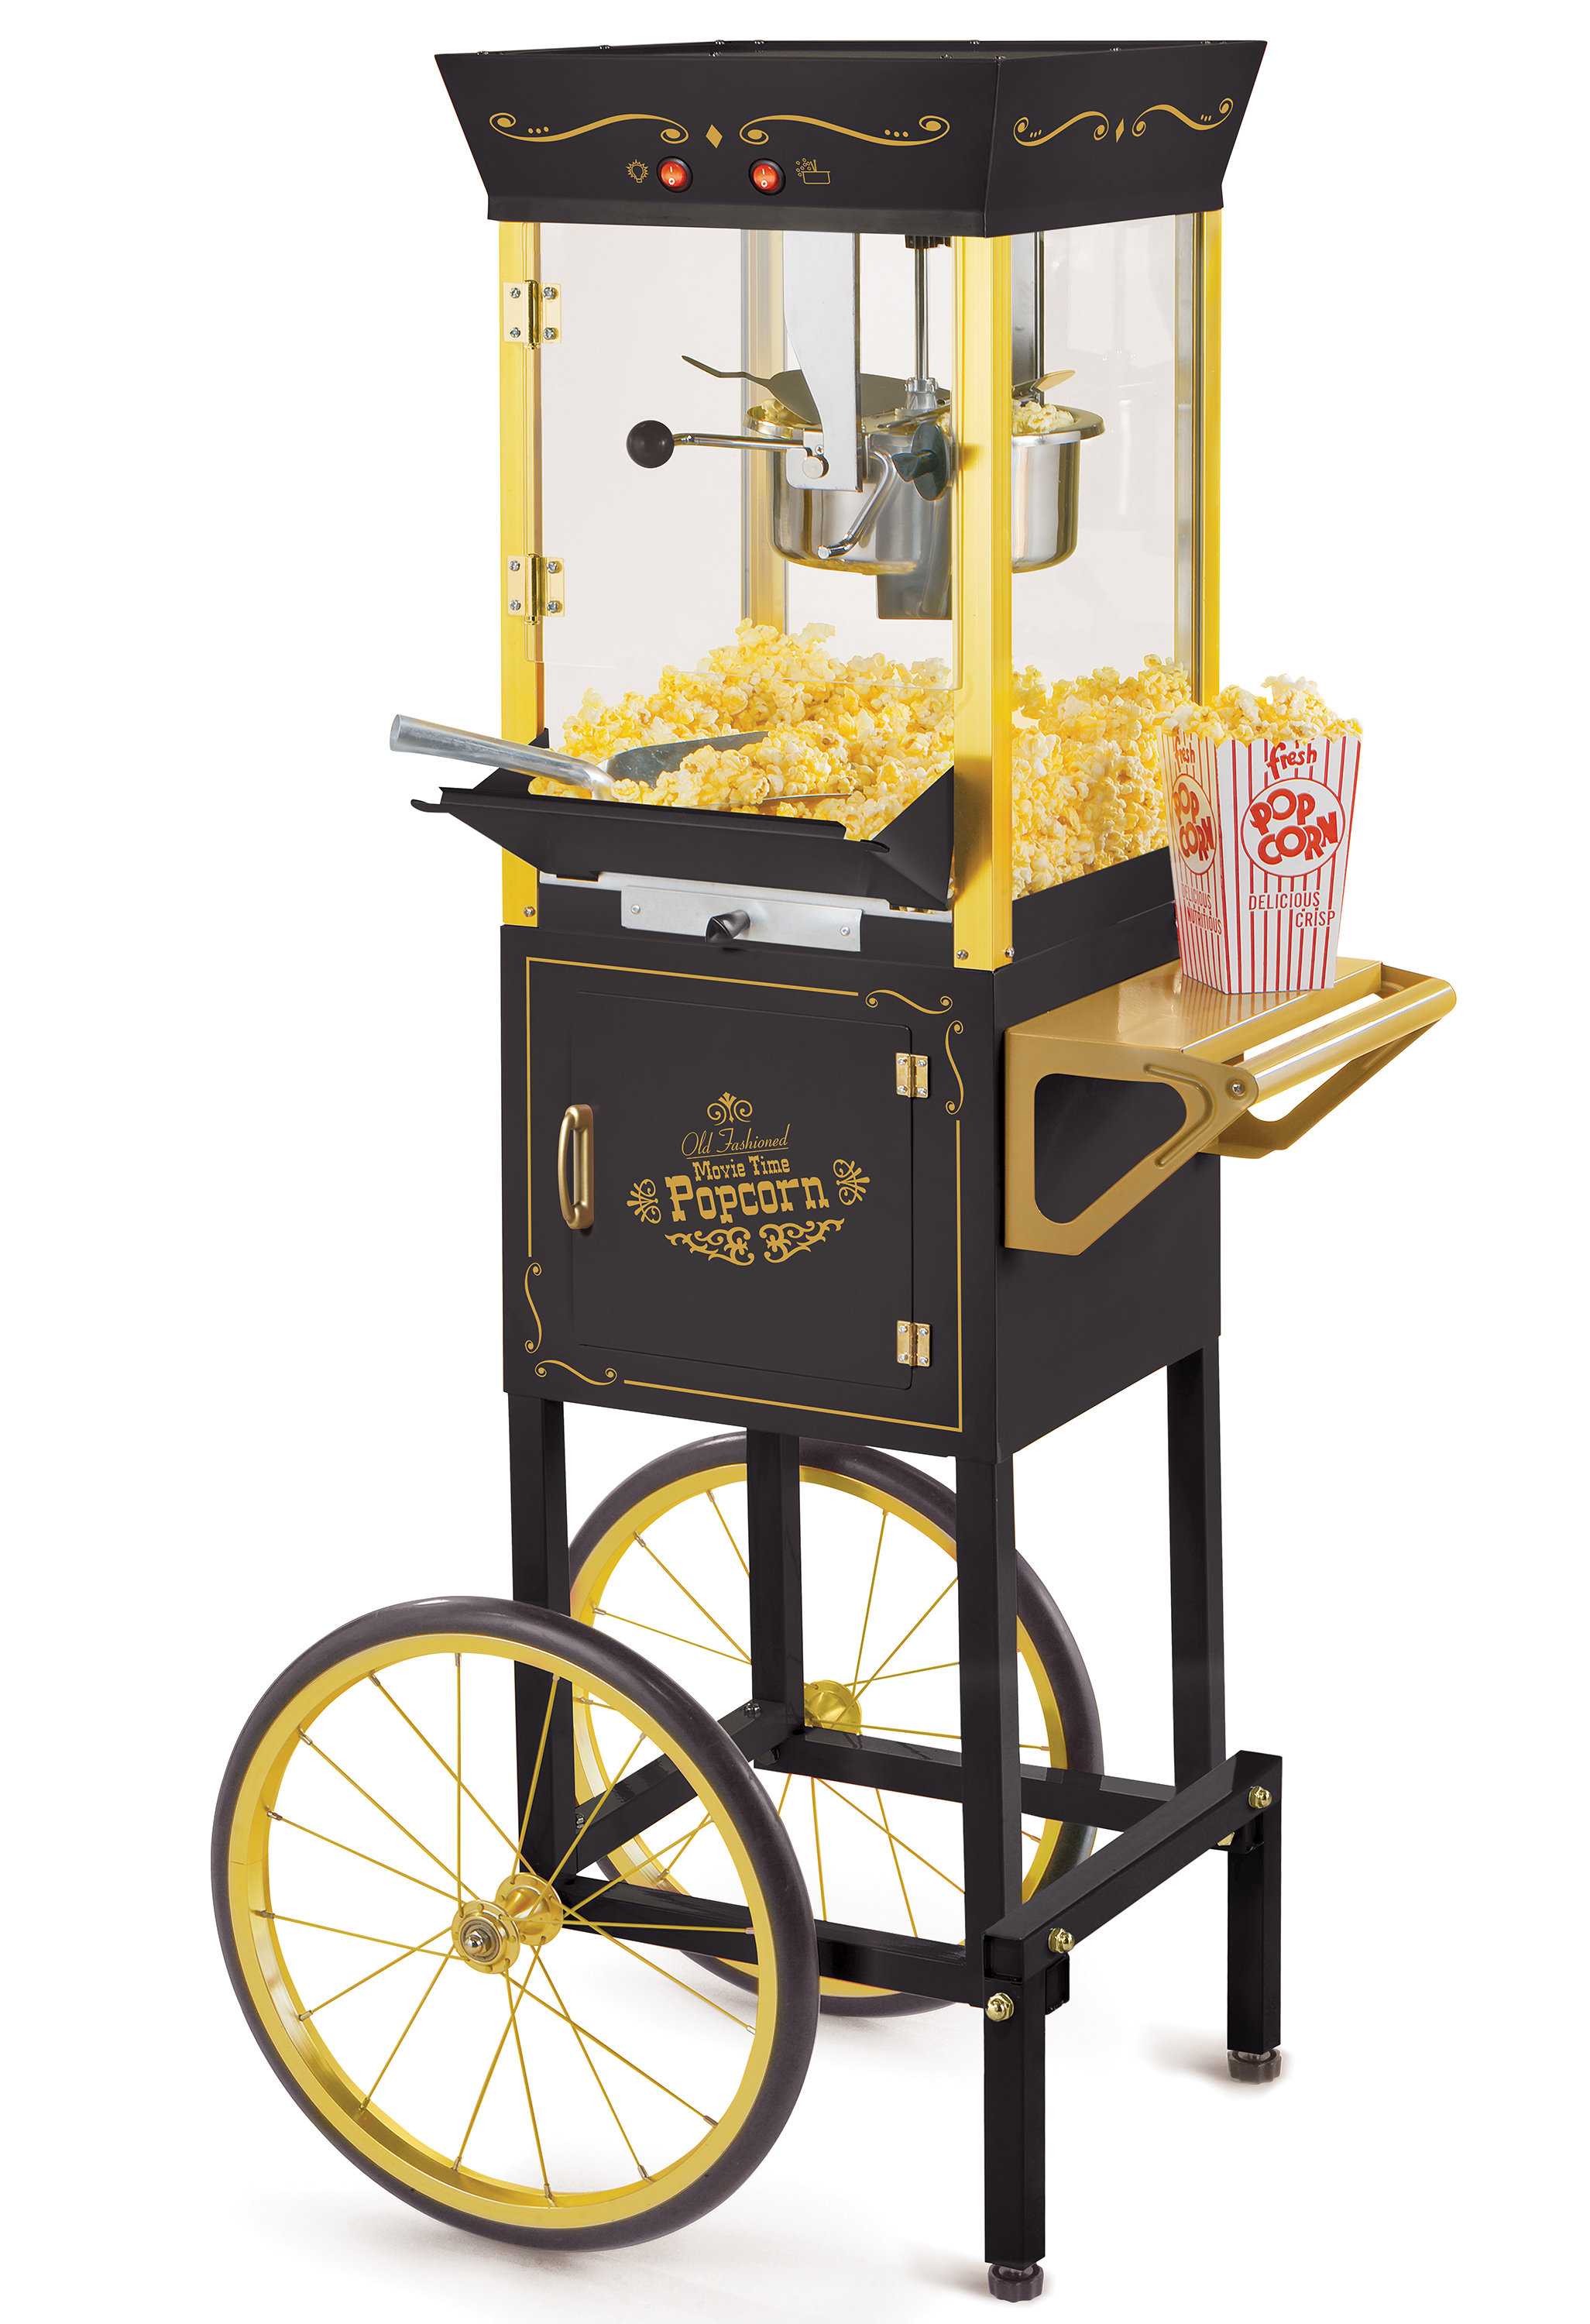 Nostalgia Popcorn Maker, 2.5 Oz Kettle Makes 10 Cups, Retro Classic Popcorn